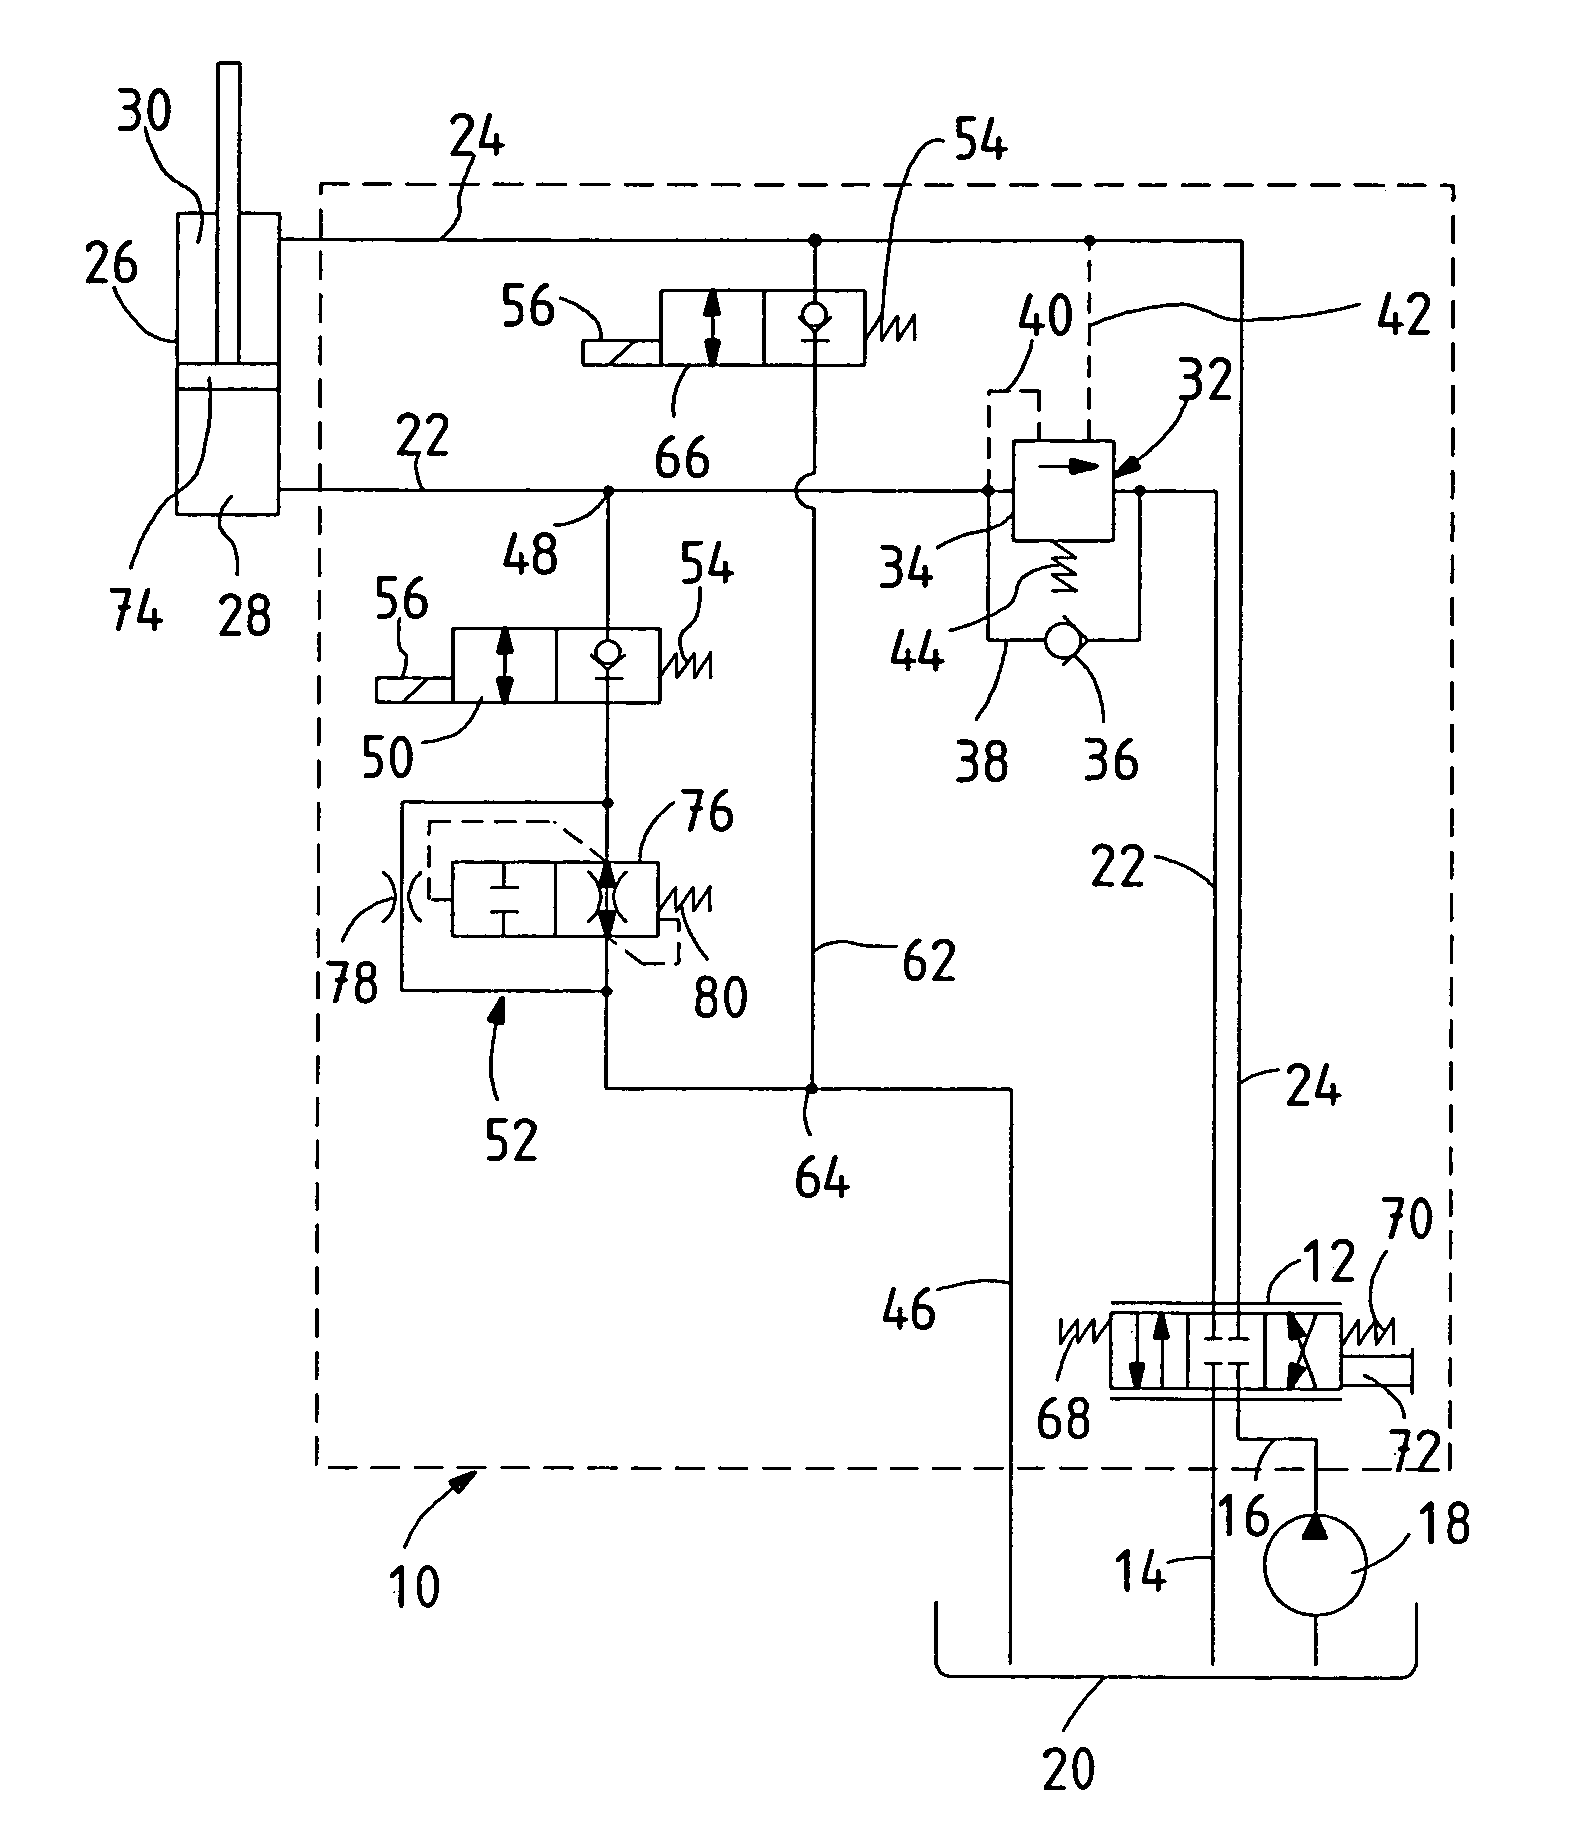 Hydraulic control circuit for a hydraulic lifting cylinder